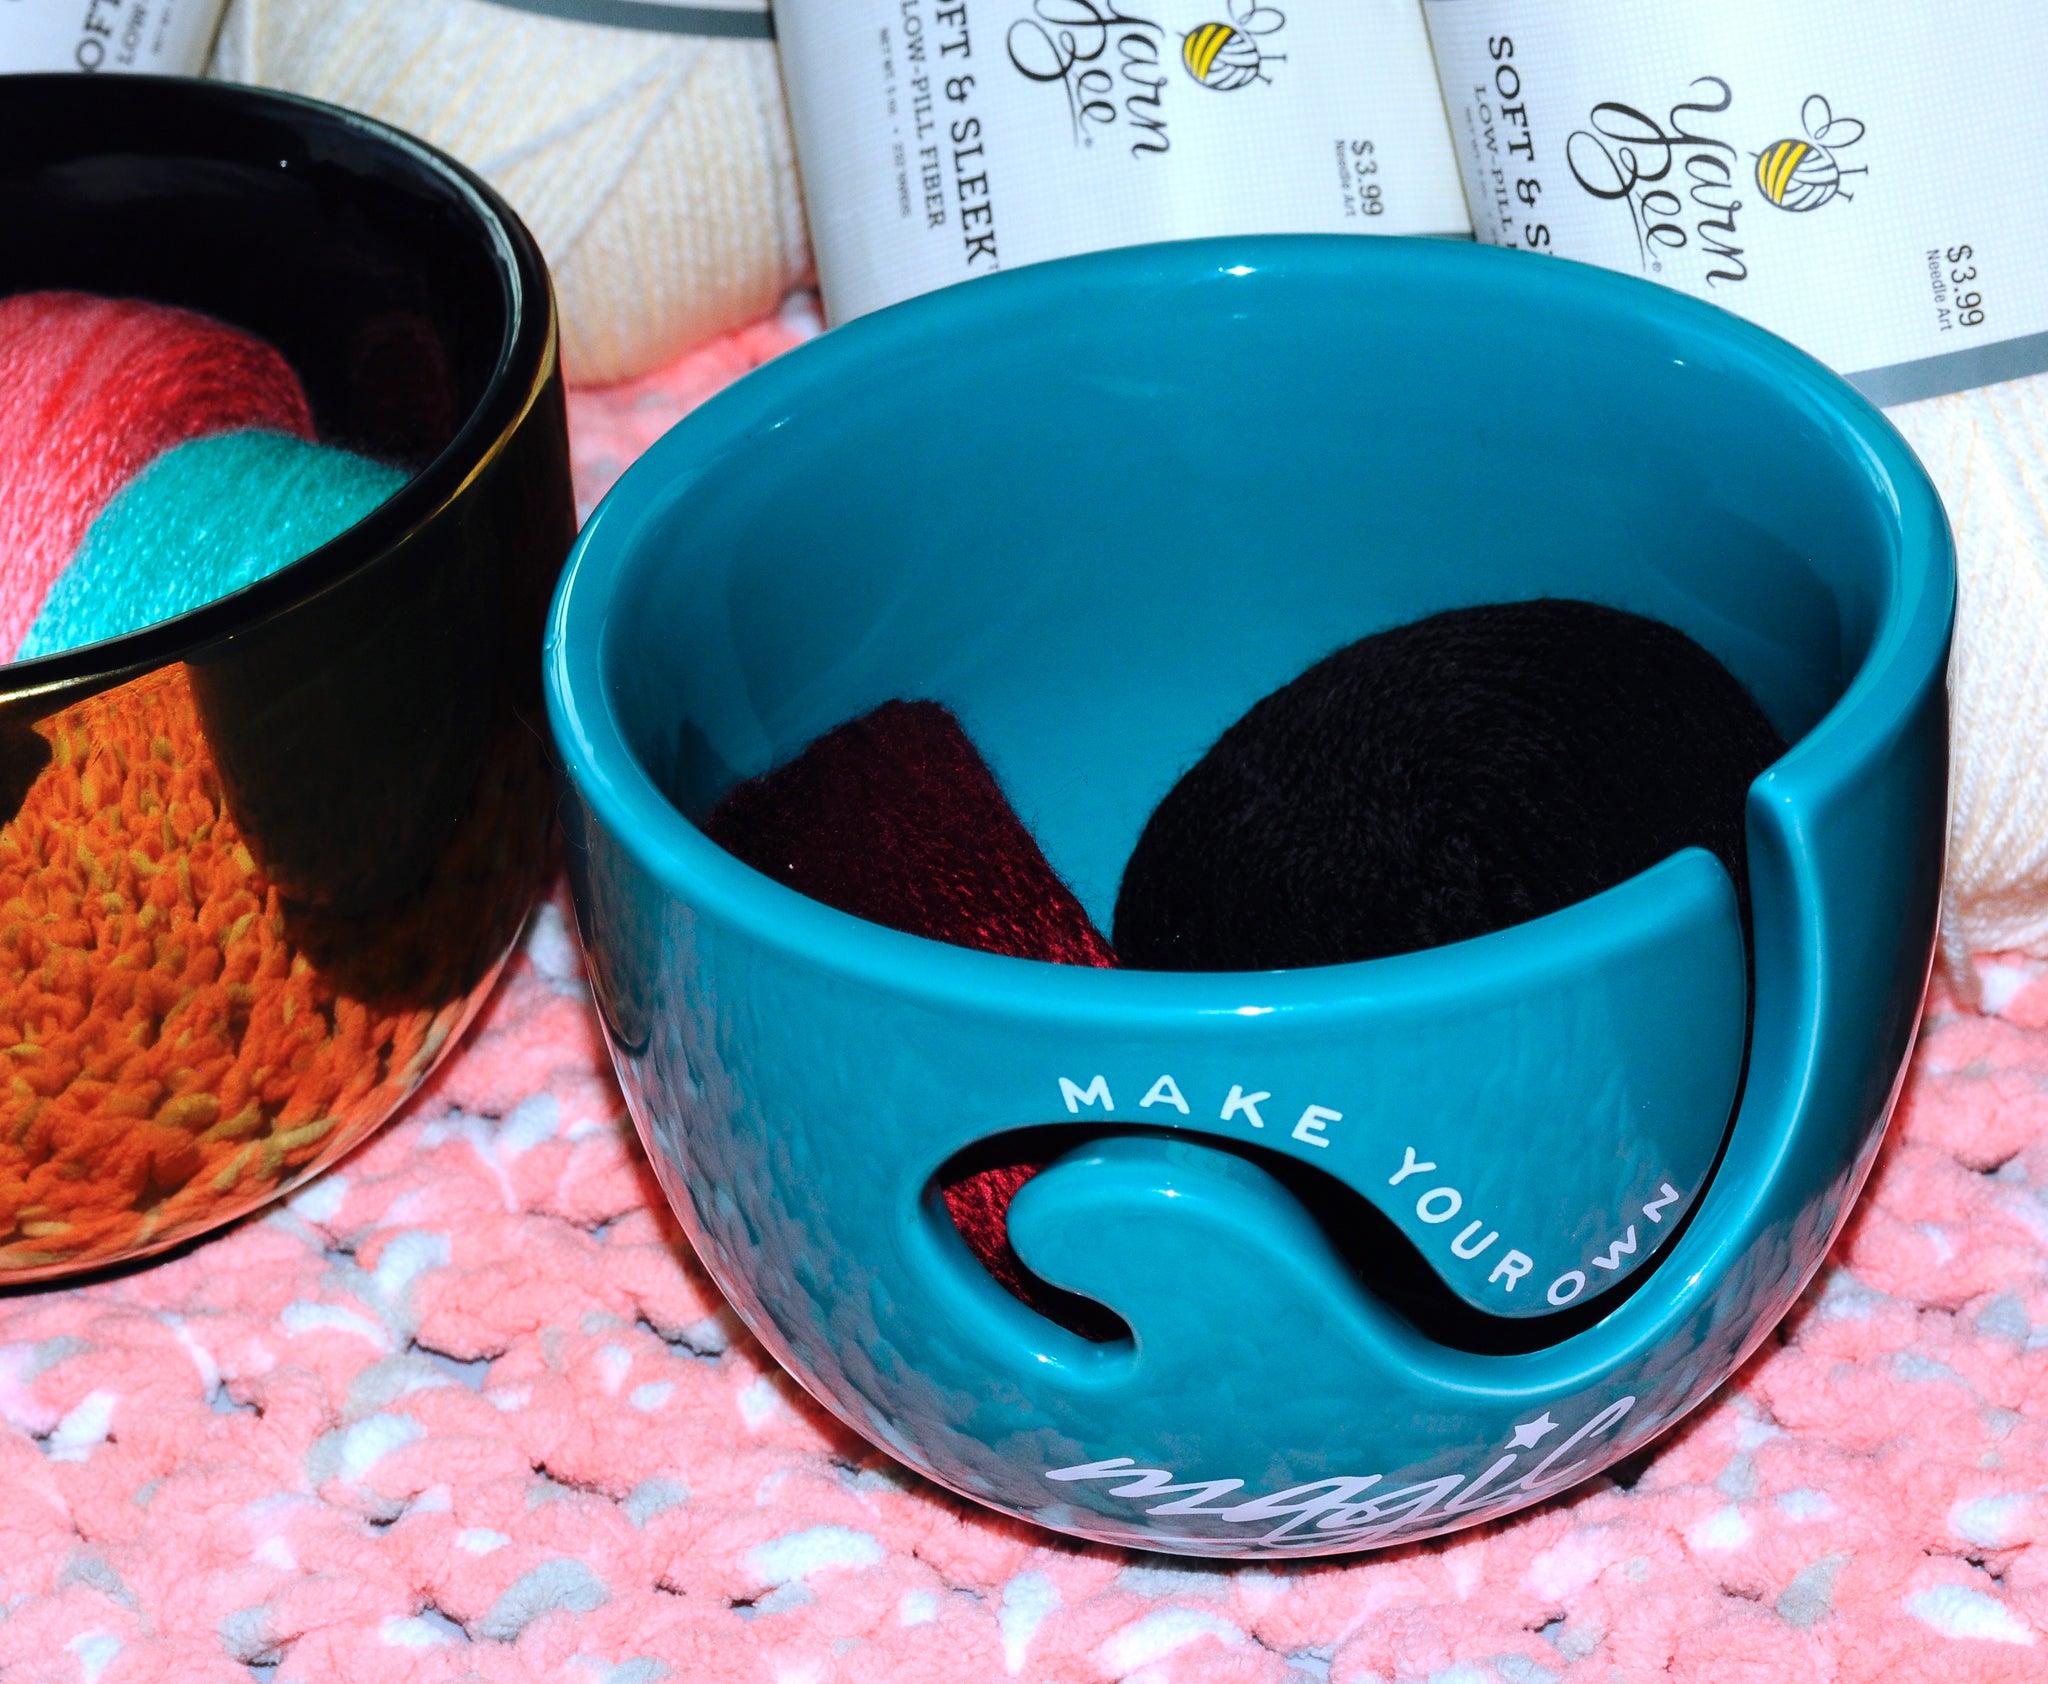 Turquoise Flower Yarn Bowl, Yarn Bowl, Knitting Bowl, Crochet Bowl,  Turquoise and White Yarn Bowl 